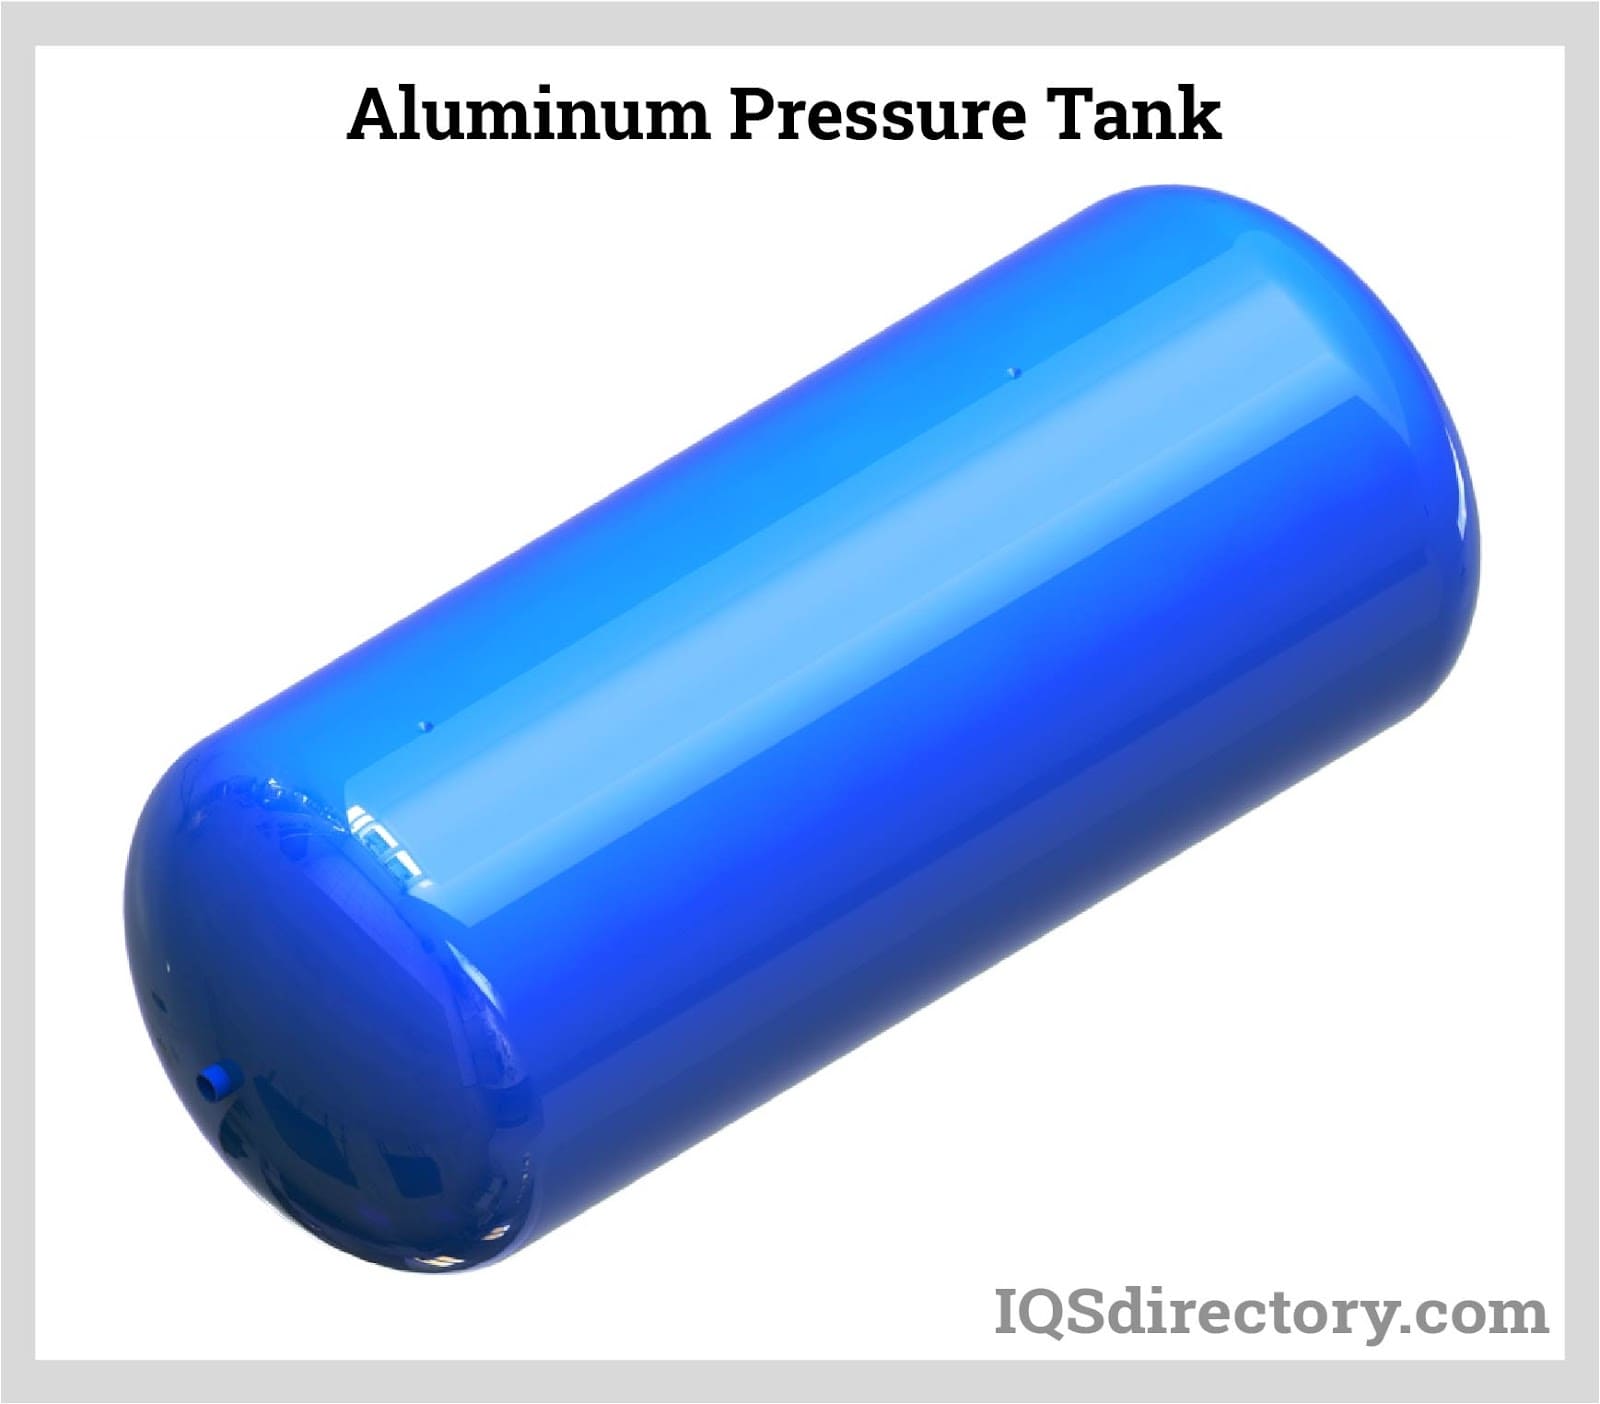 Aluminum Pressure Tank